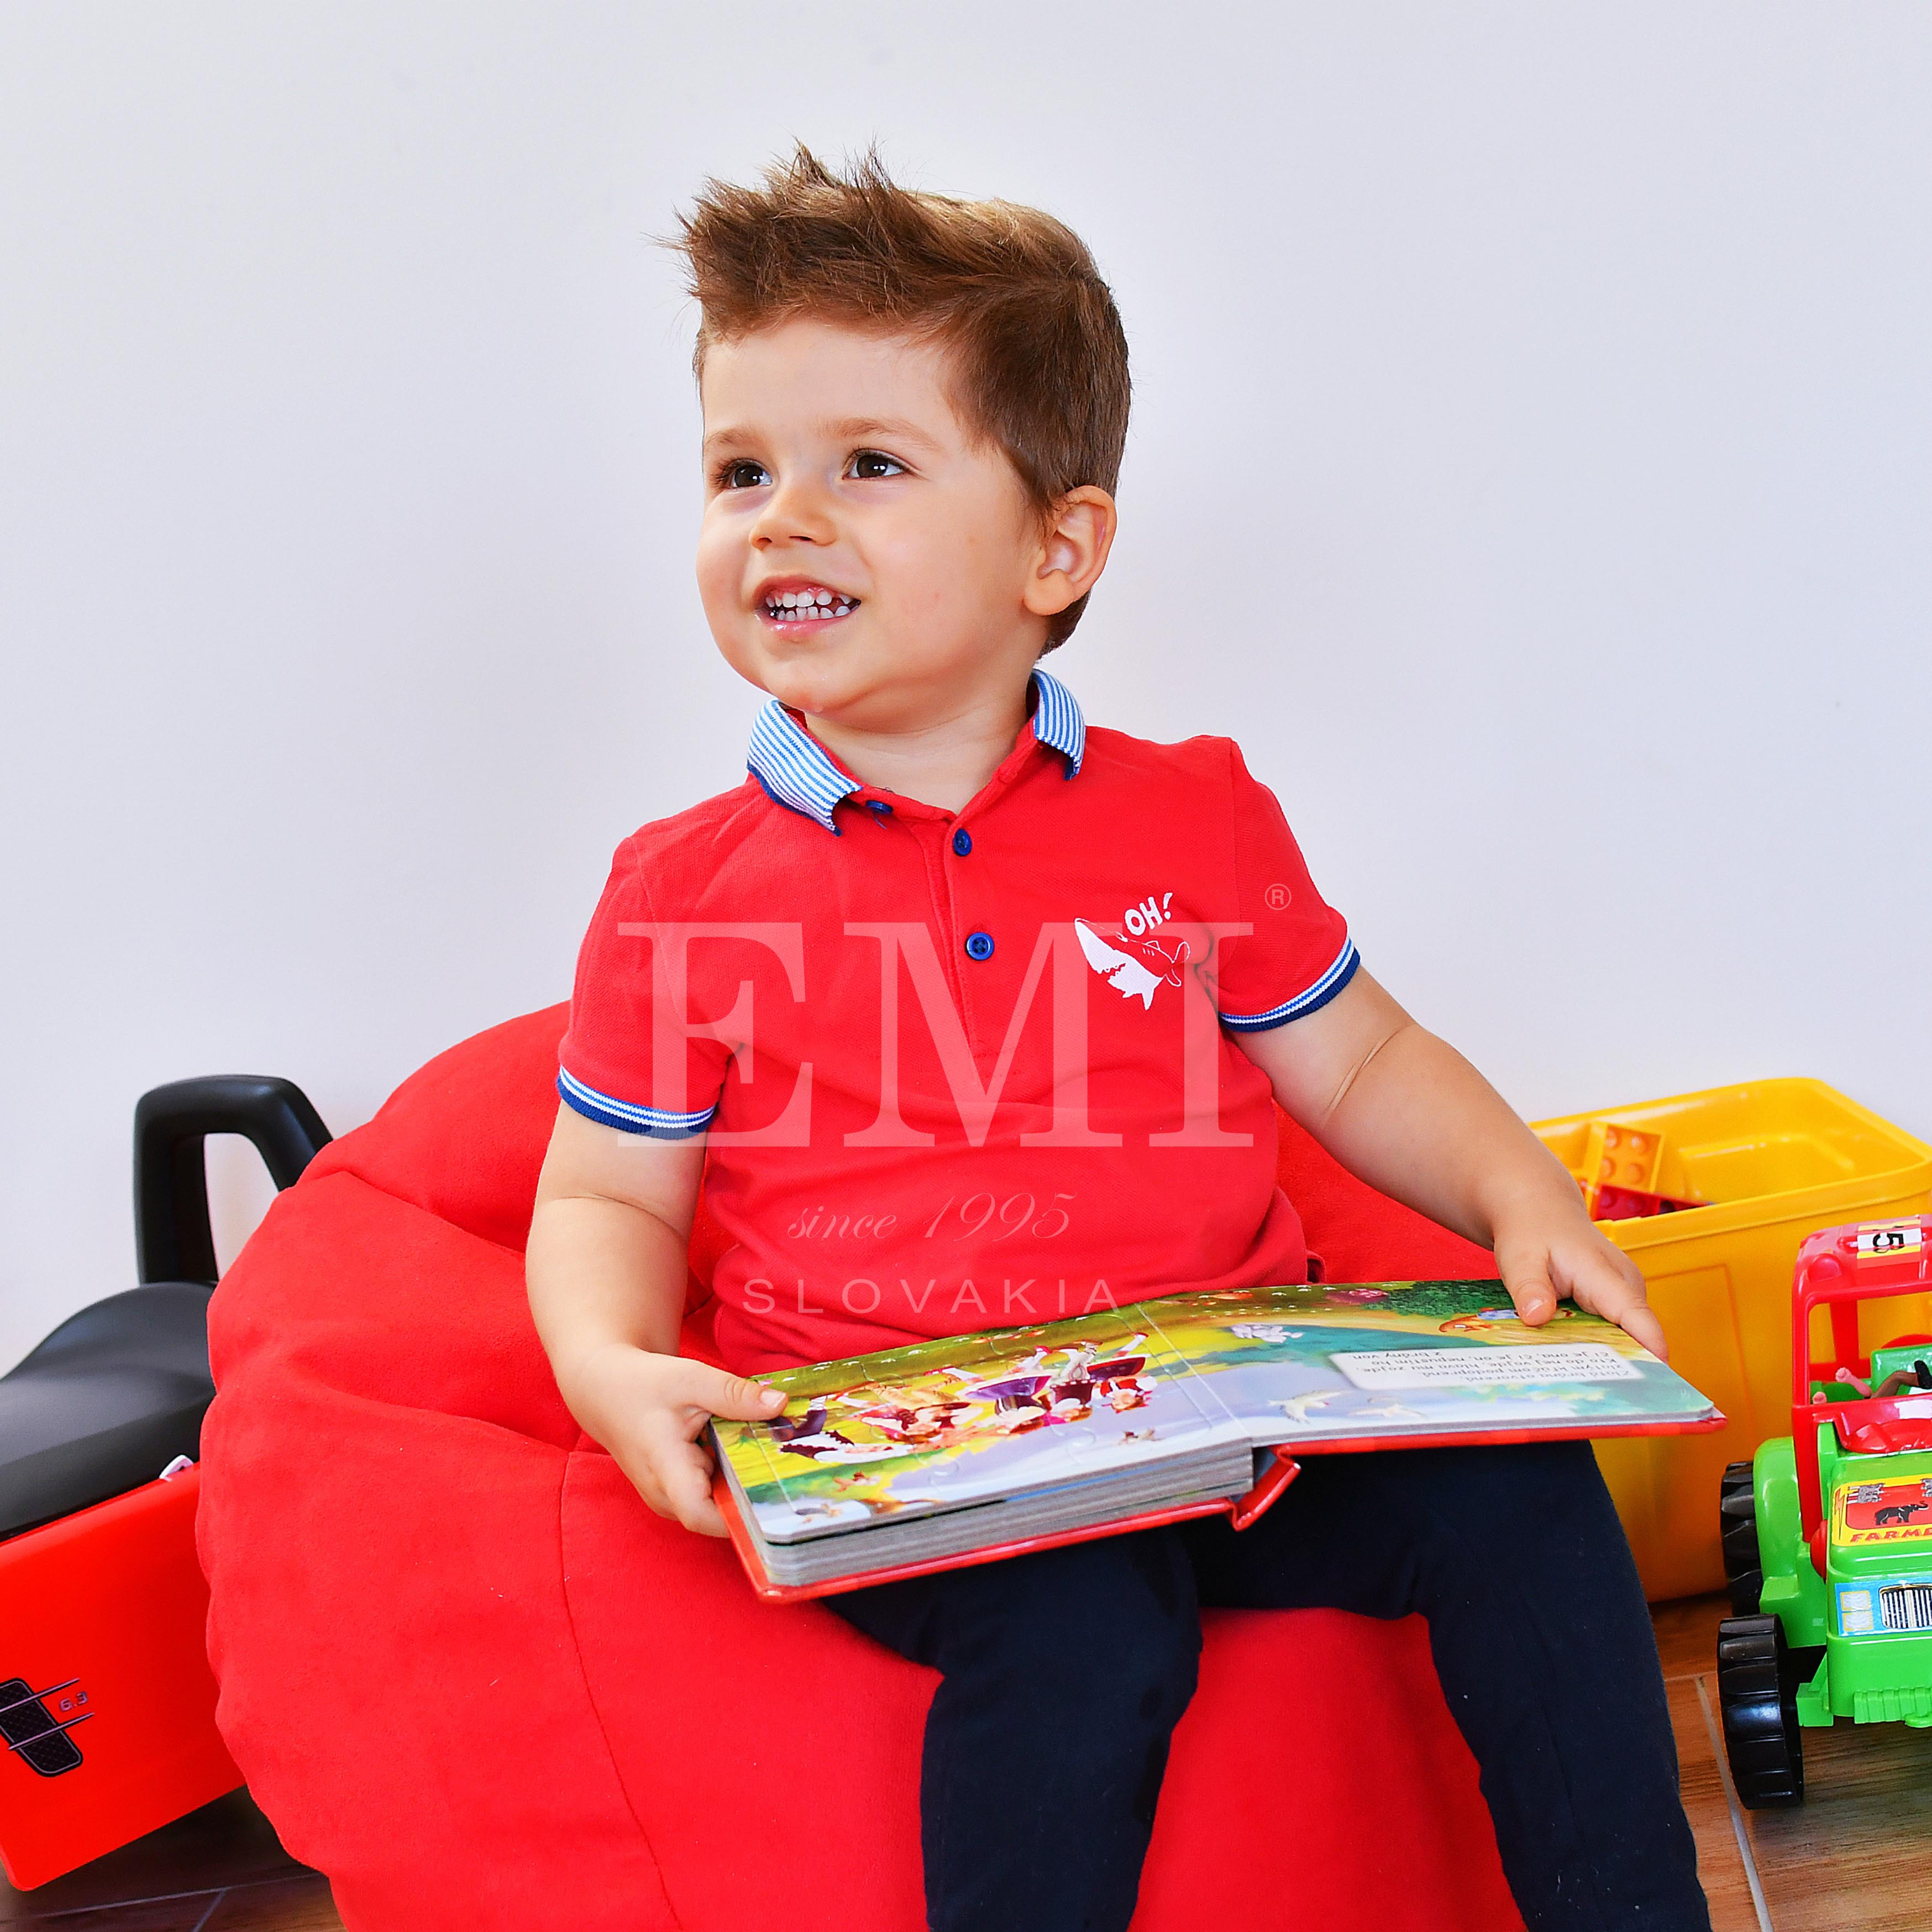 8 dôvodov, prečo sú sedacie vaky ideálnym doplnkom každej detskej izby